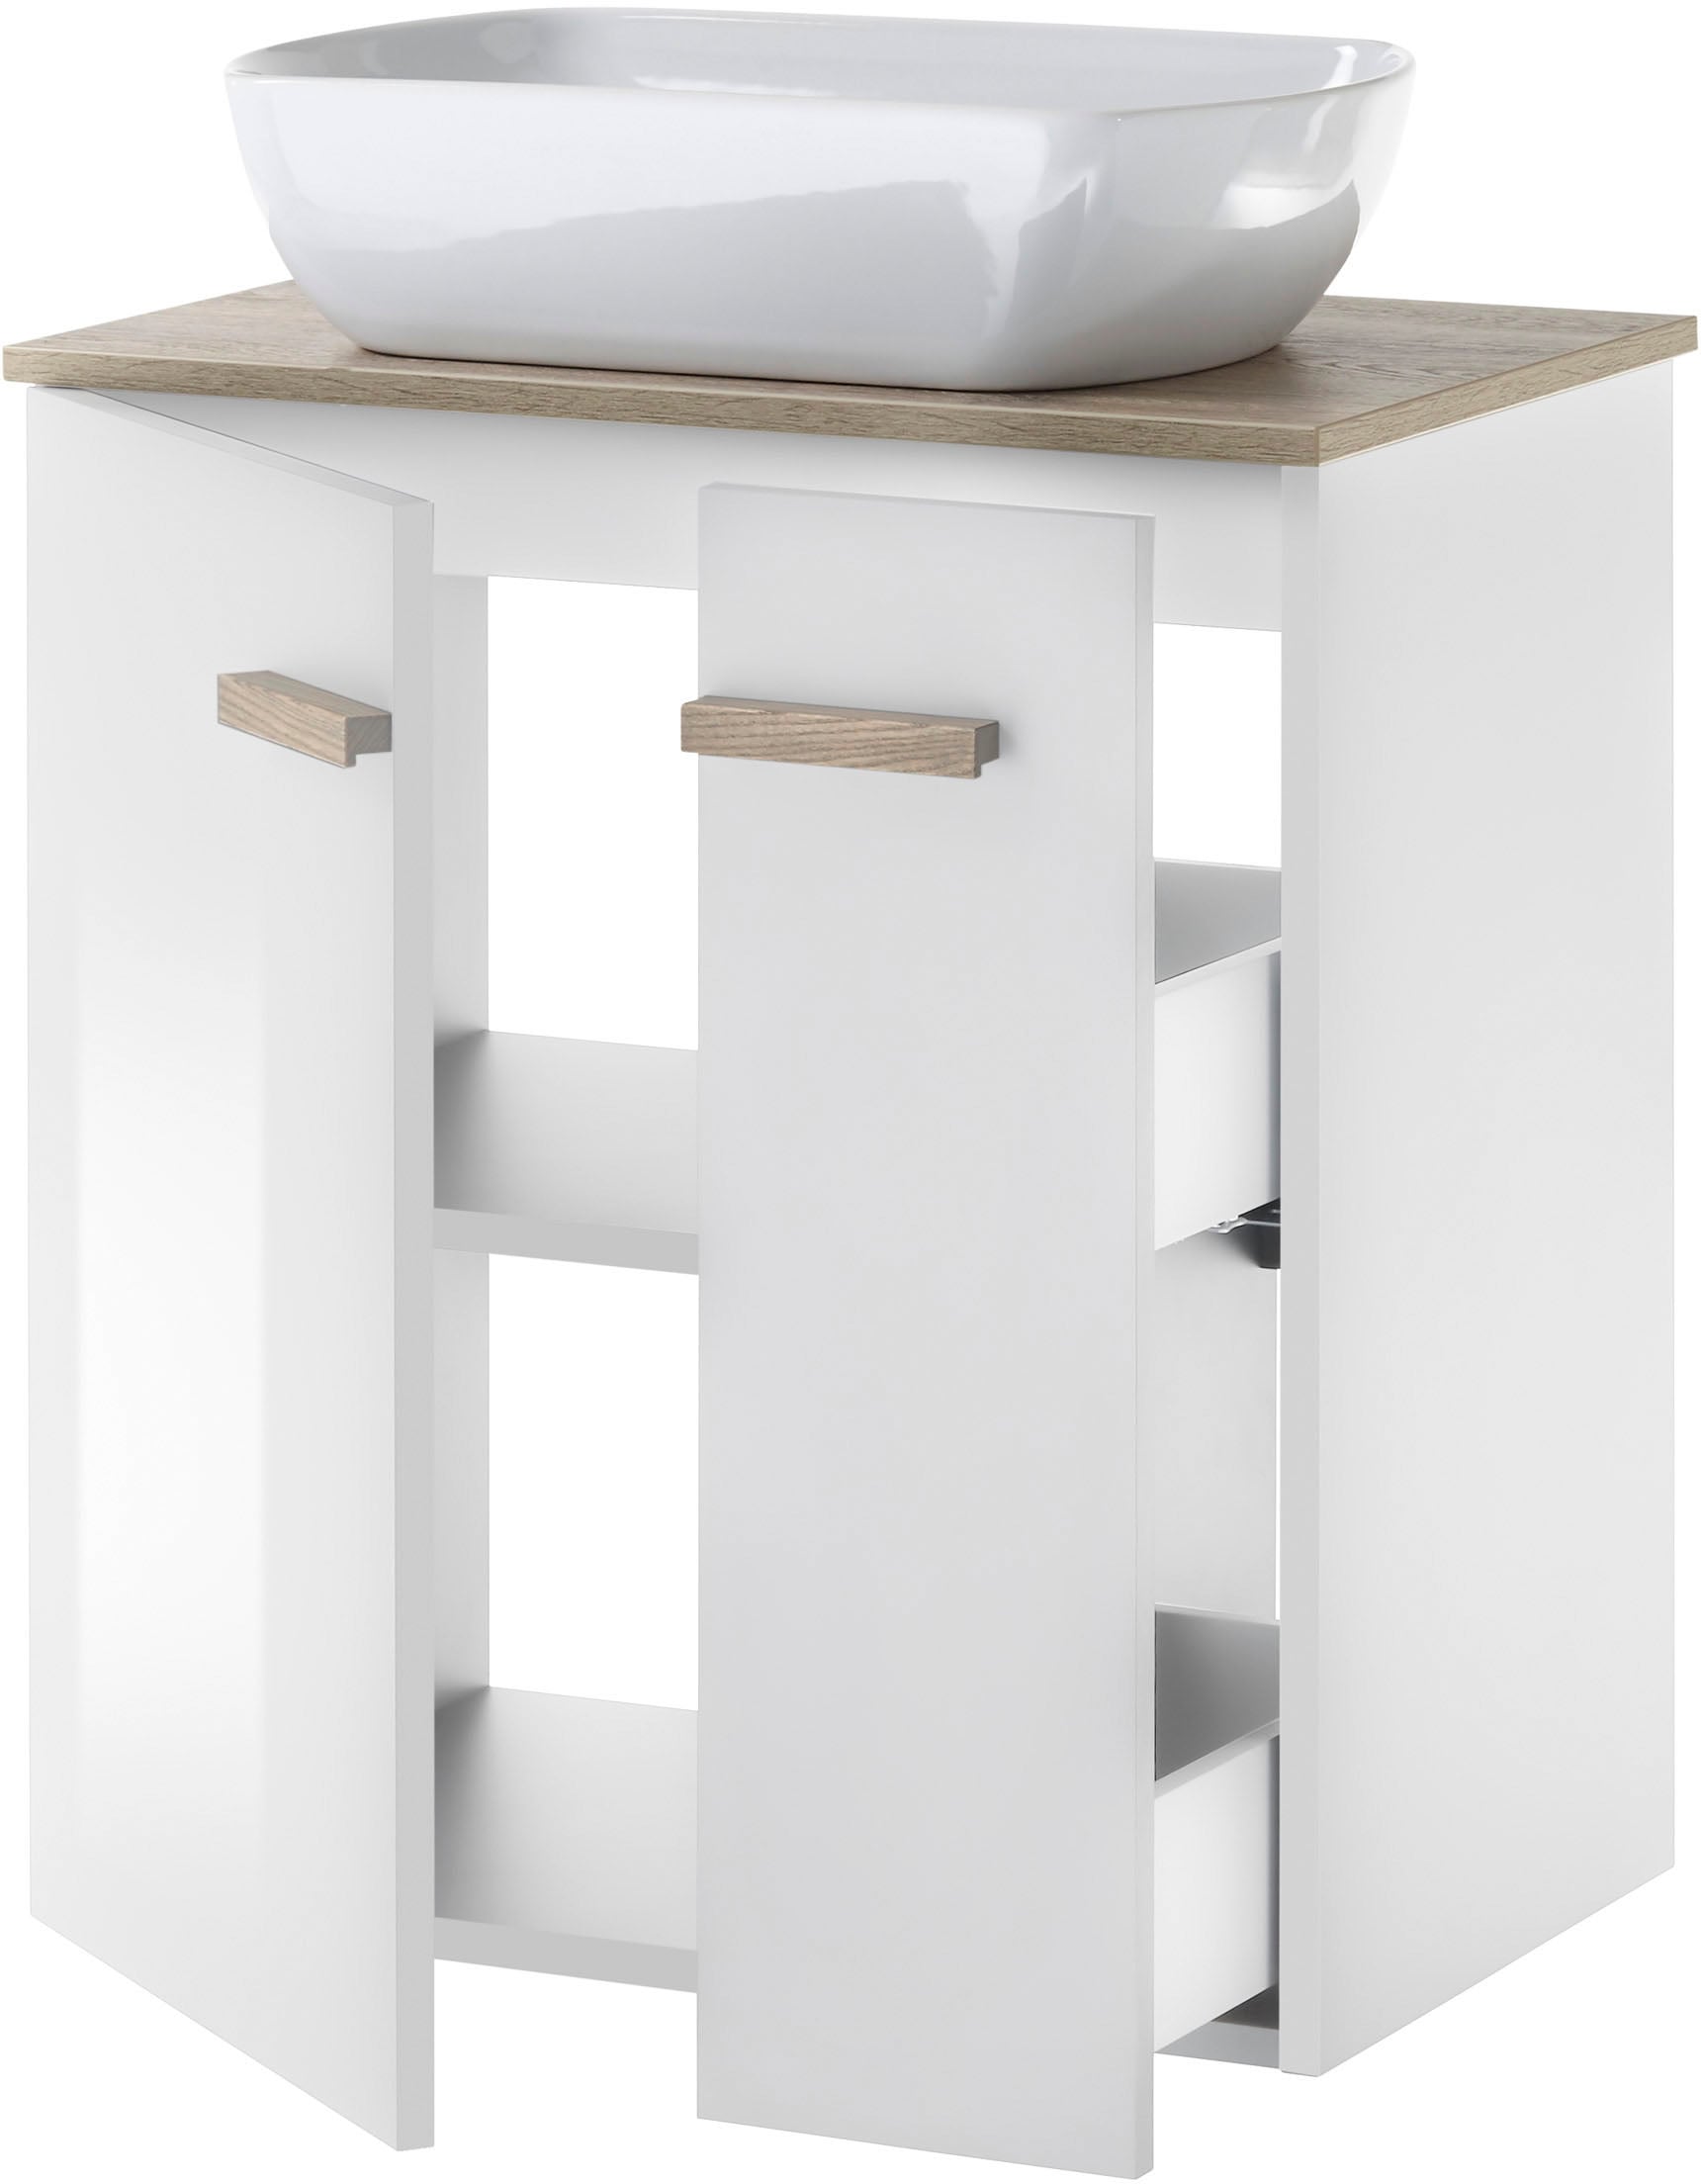 Places of Style Badmöbel-Set »SOLiD«, (2 St.), Breite 60 cm, Waschtisch mit Aufsatzwaschbecken, Spiegel mit LED